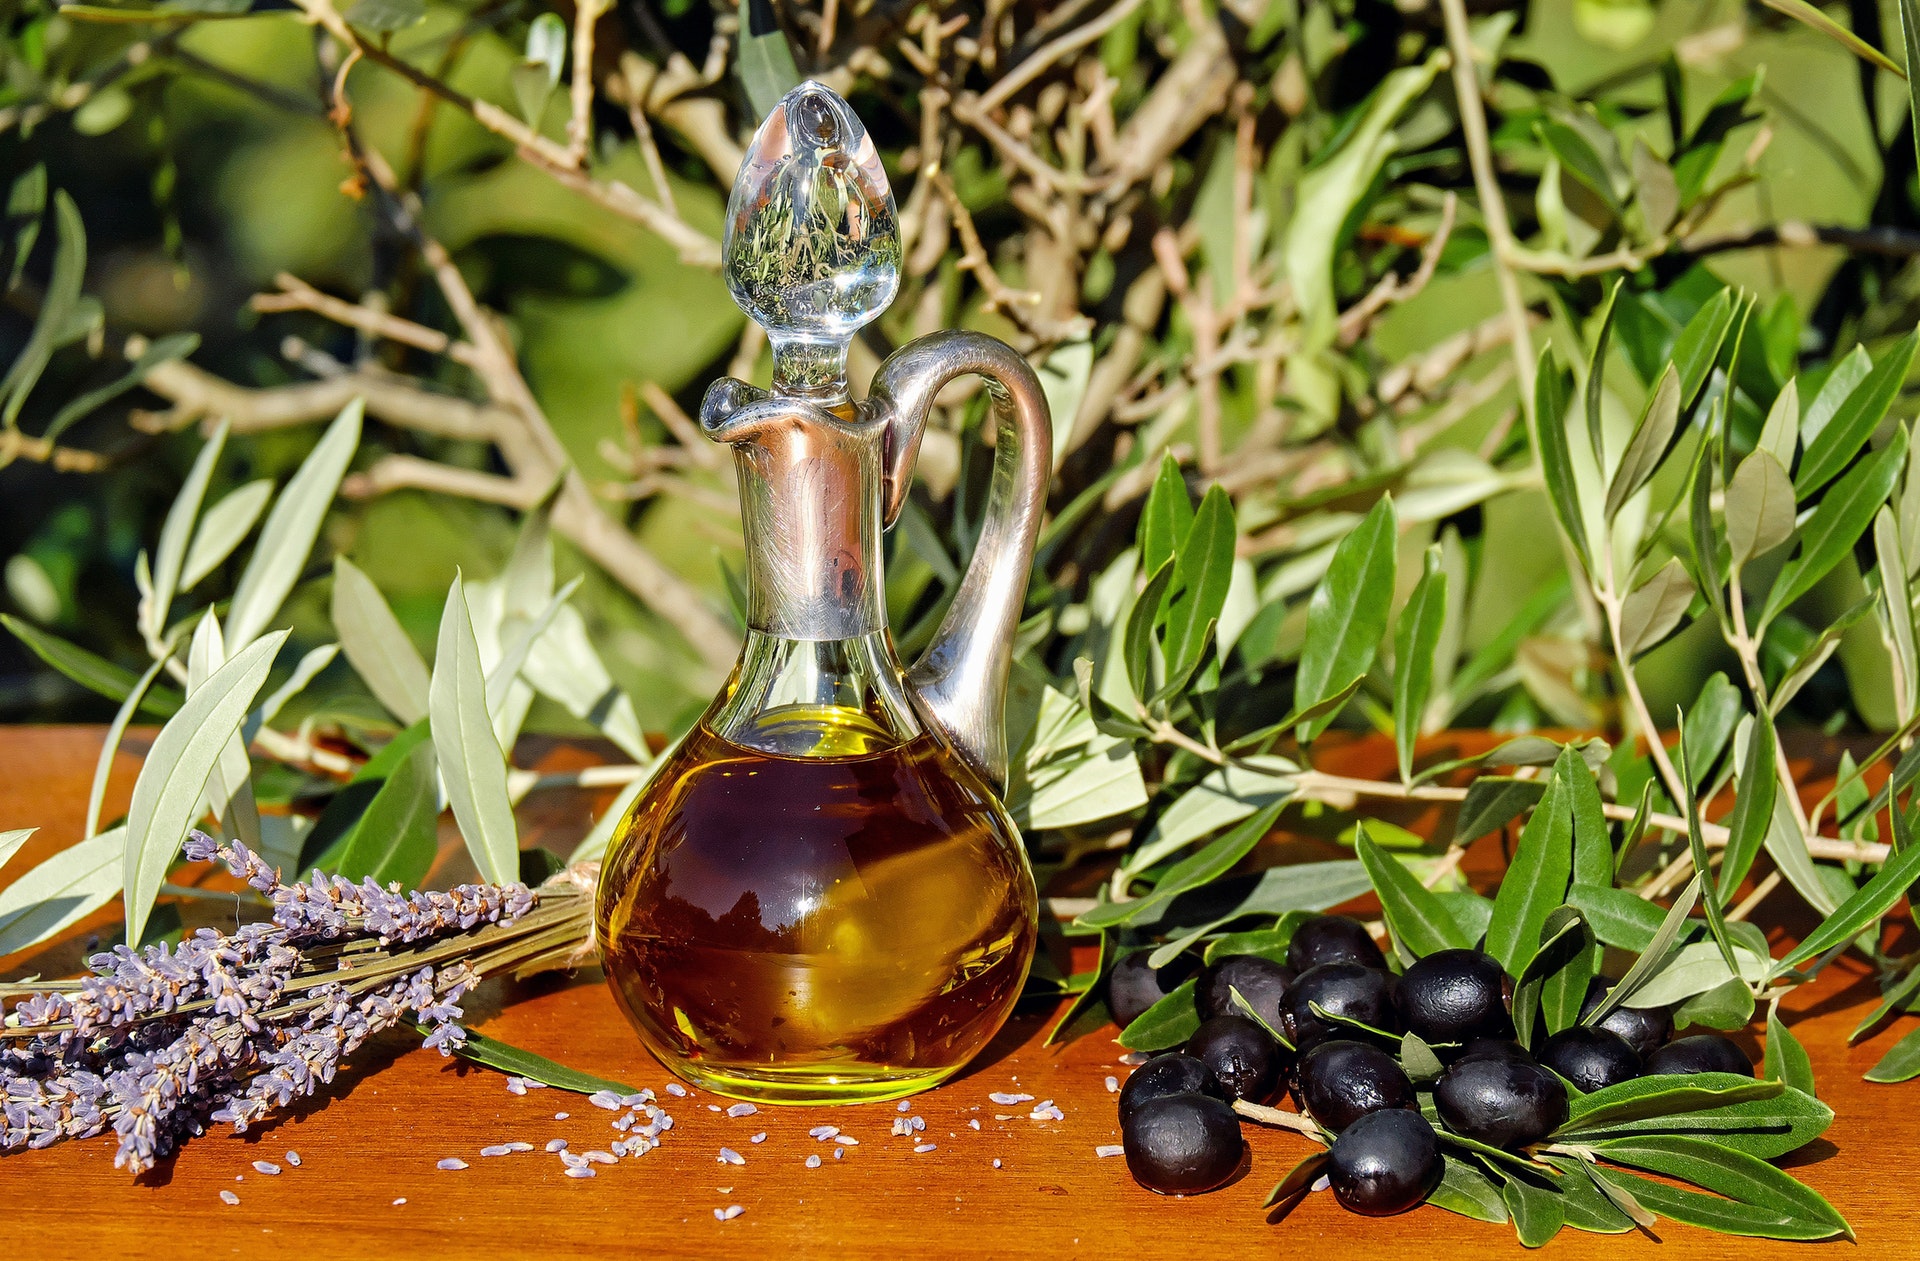 Black olives, lavender leaves, and a jar of olive oil